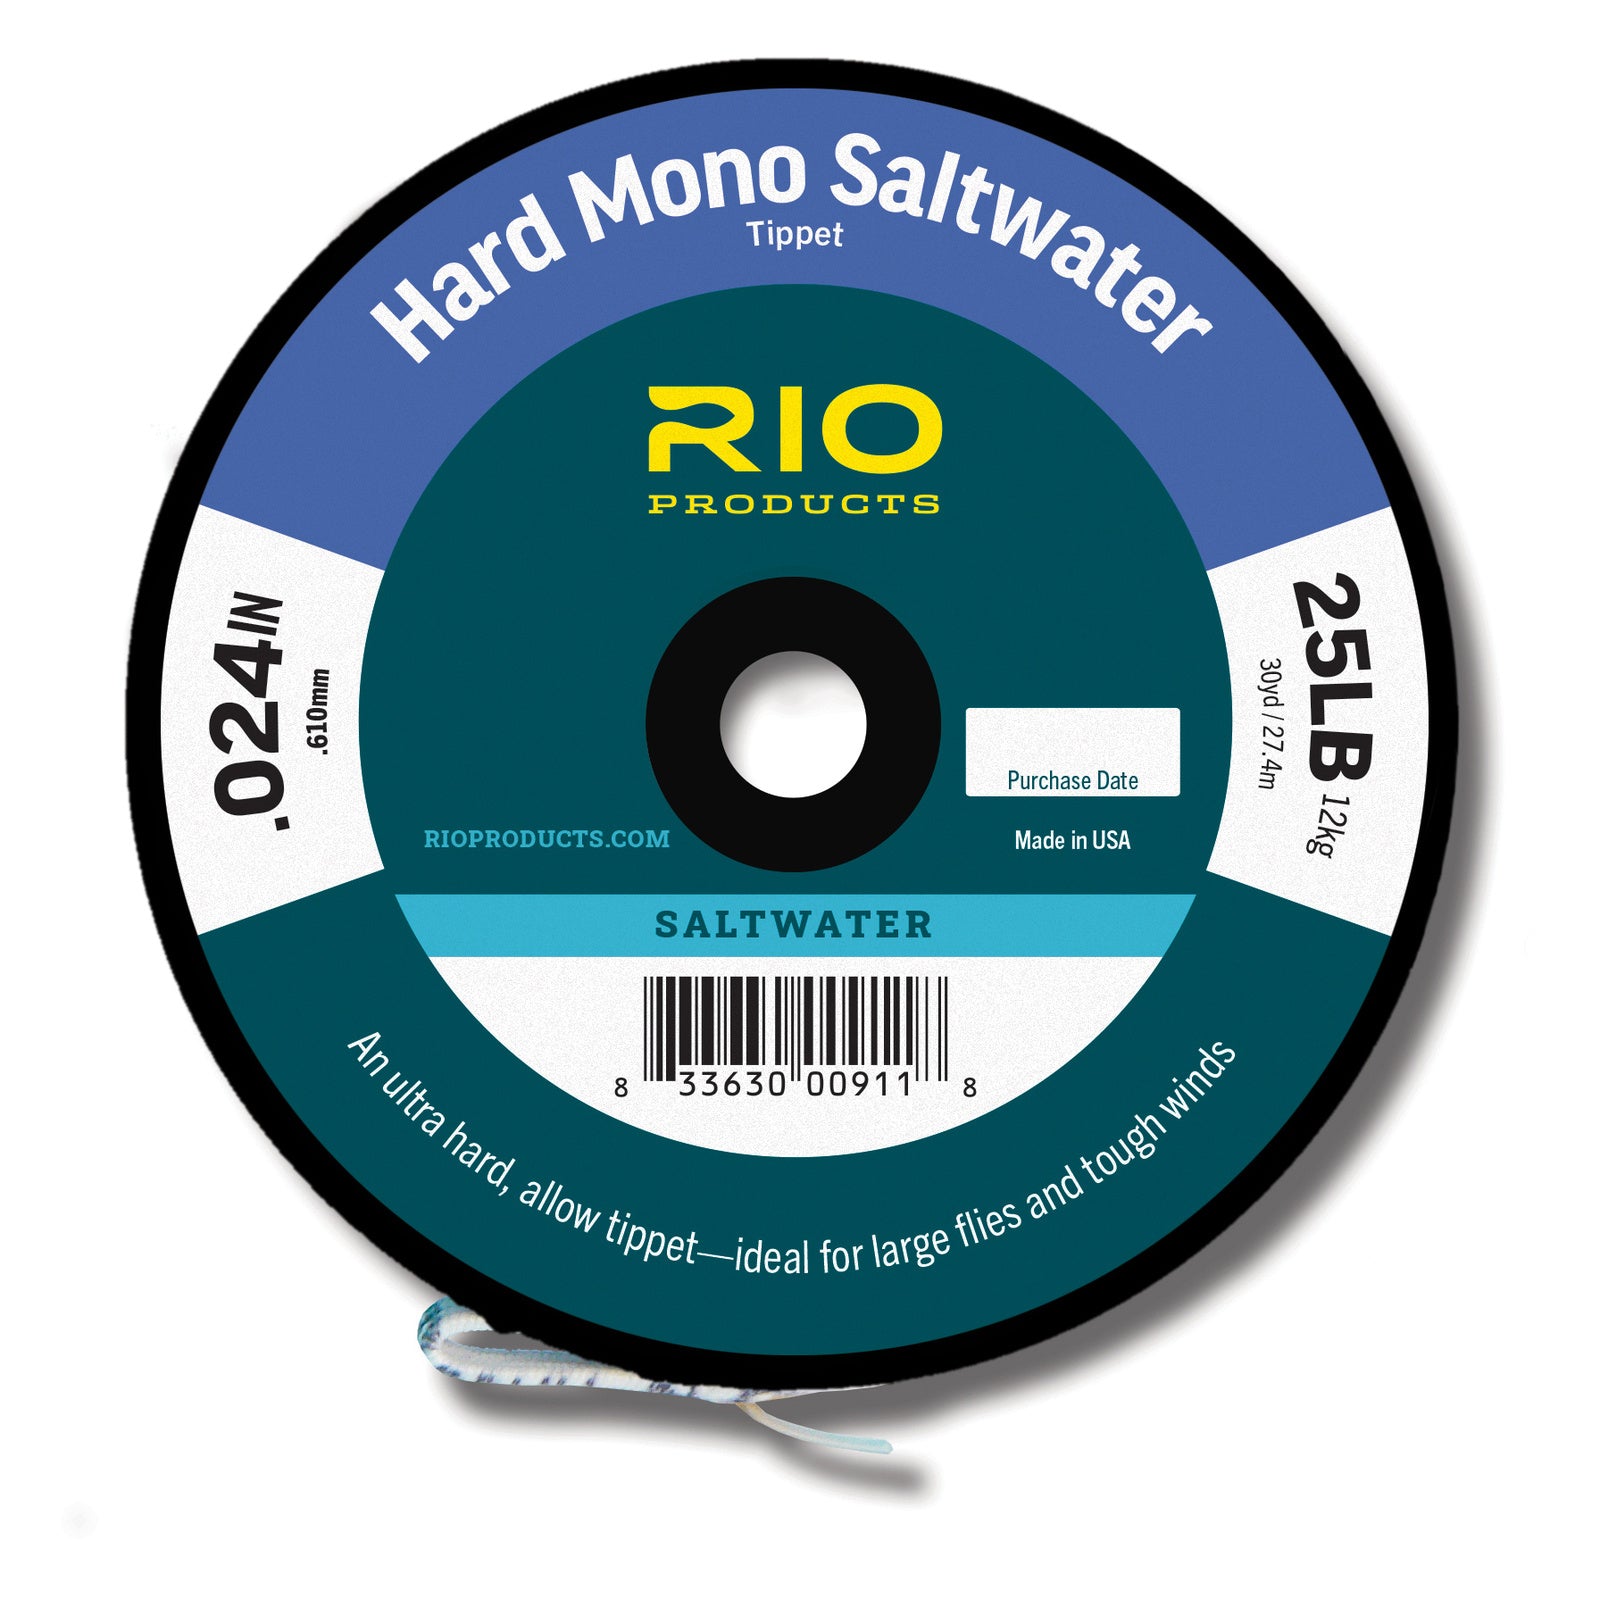 RIO Saltwater Hard Mono Tippet